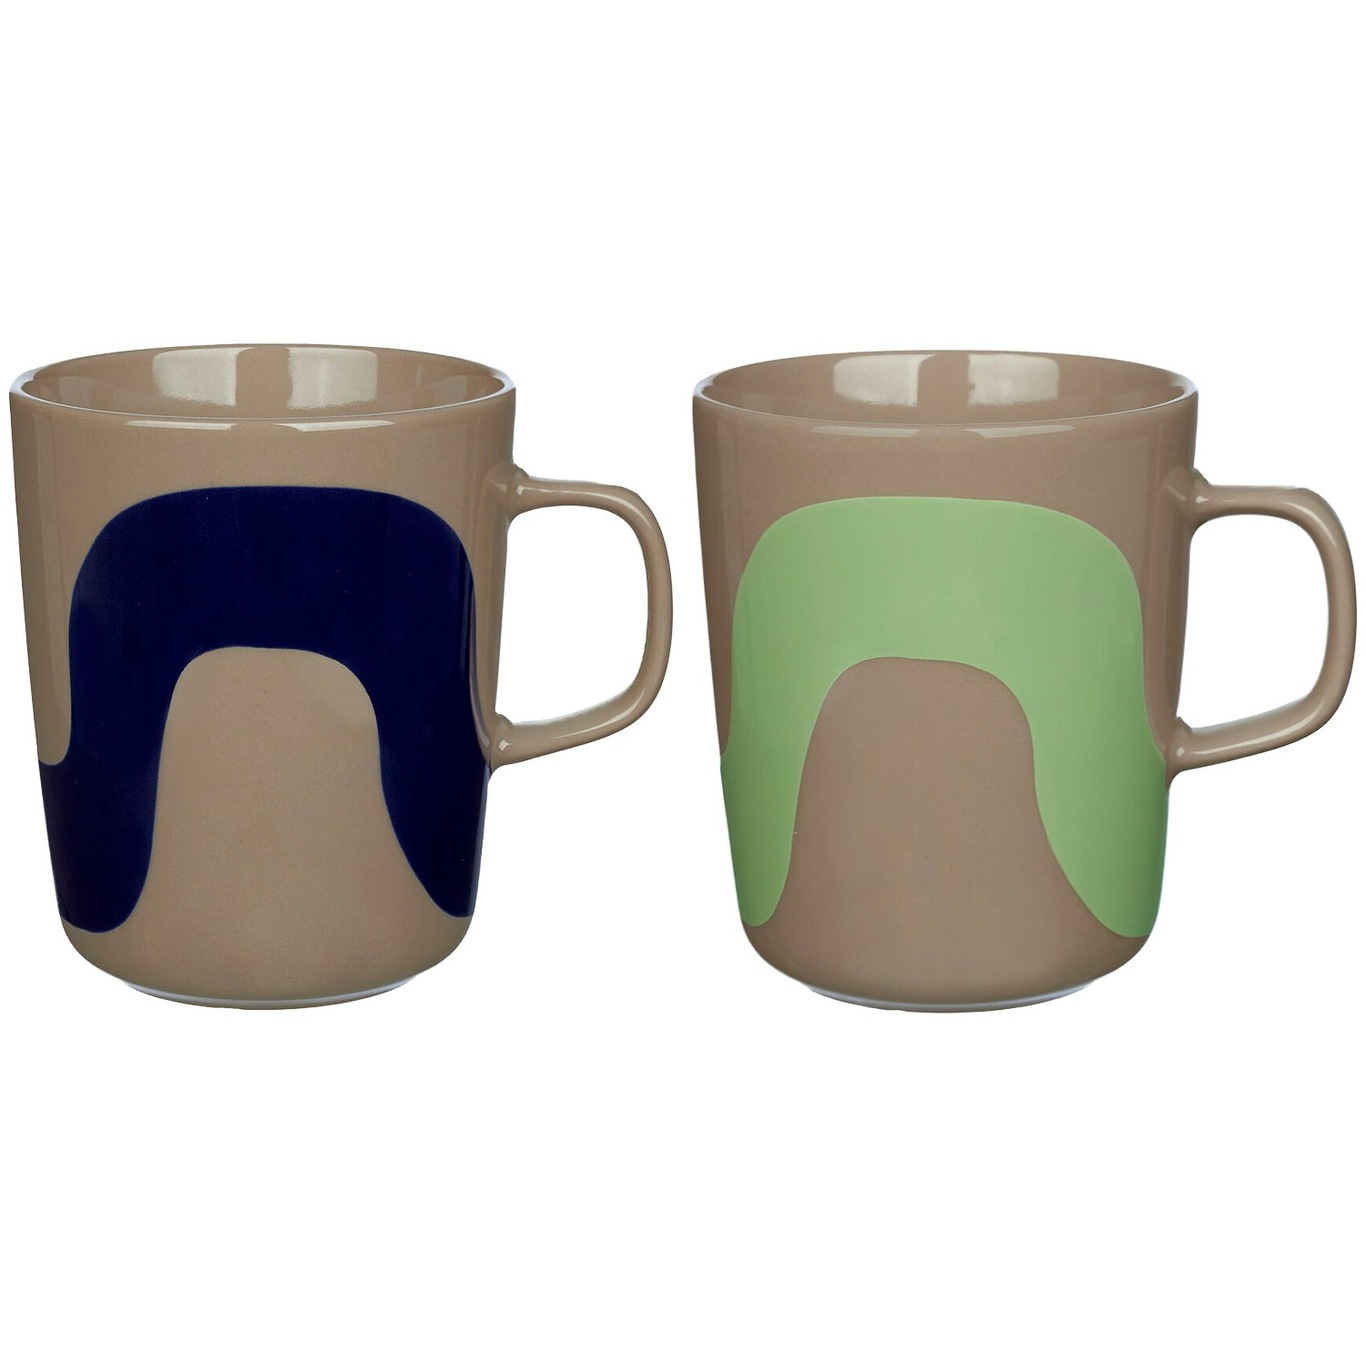 Oiva/Seireeni Kaffekopper, Fremstillet af brunt stentøj med et bølget mønster i forskellige farver 2-pak 25 cl 2-pak, Mørkeblå/Terra / Mintgrønne